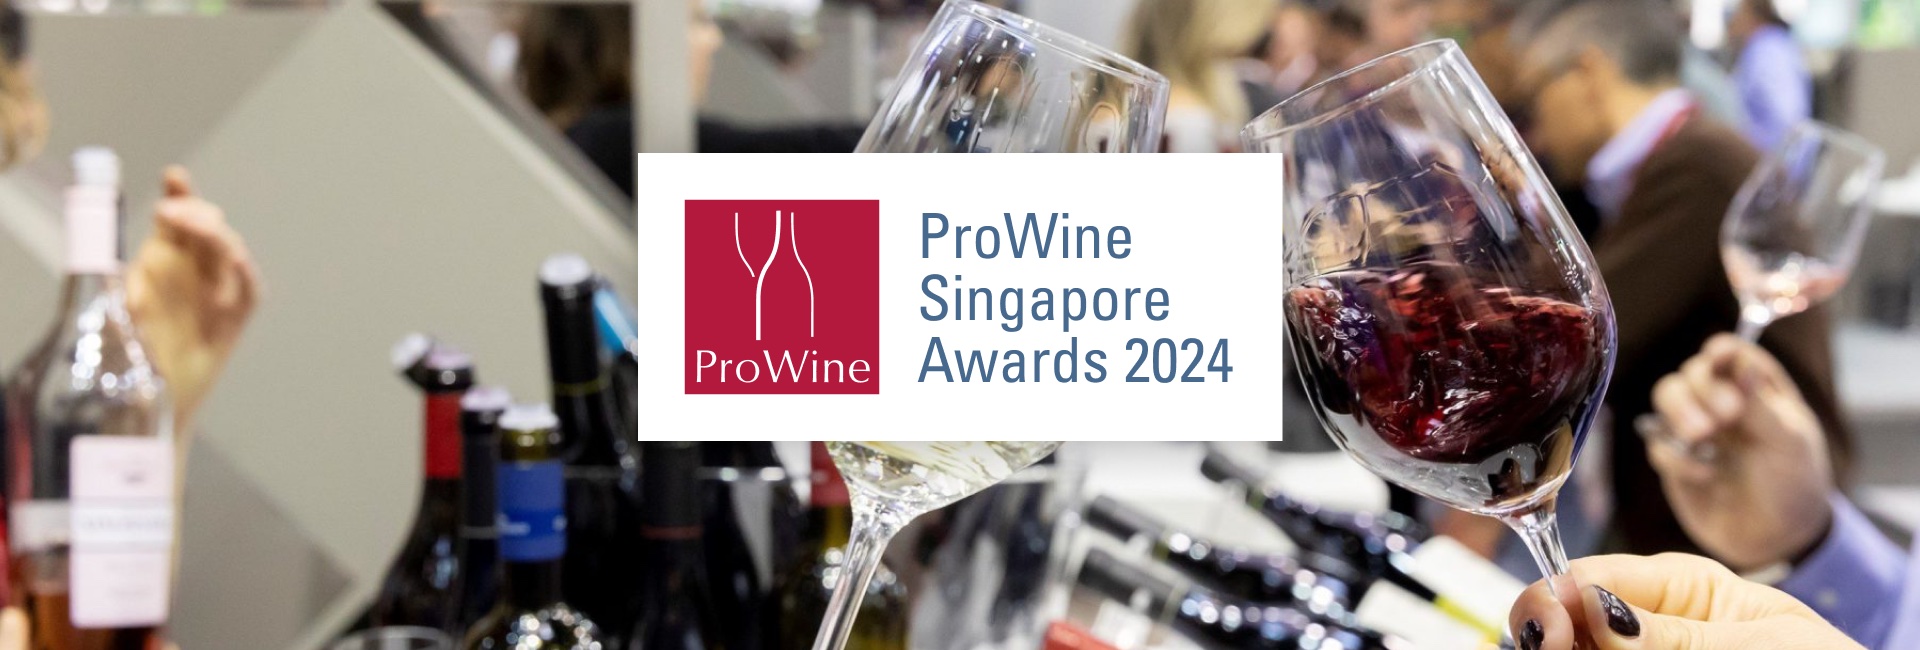 ProWine Singapore 2024 Awards